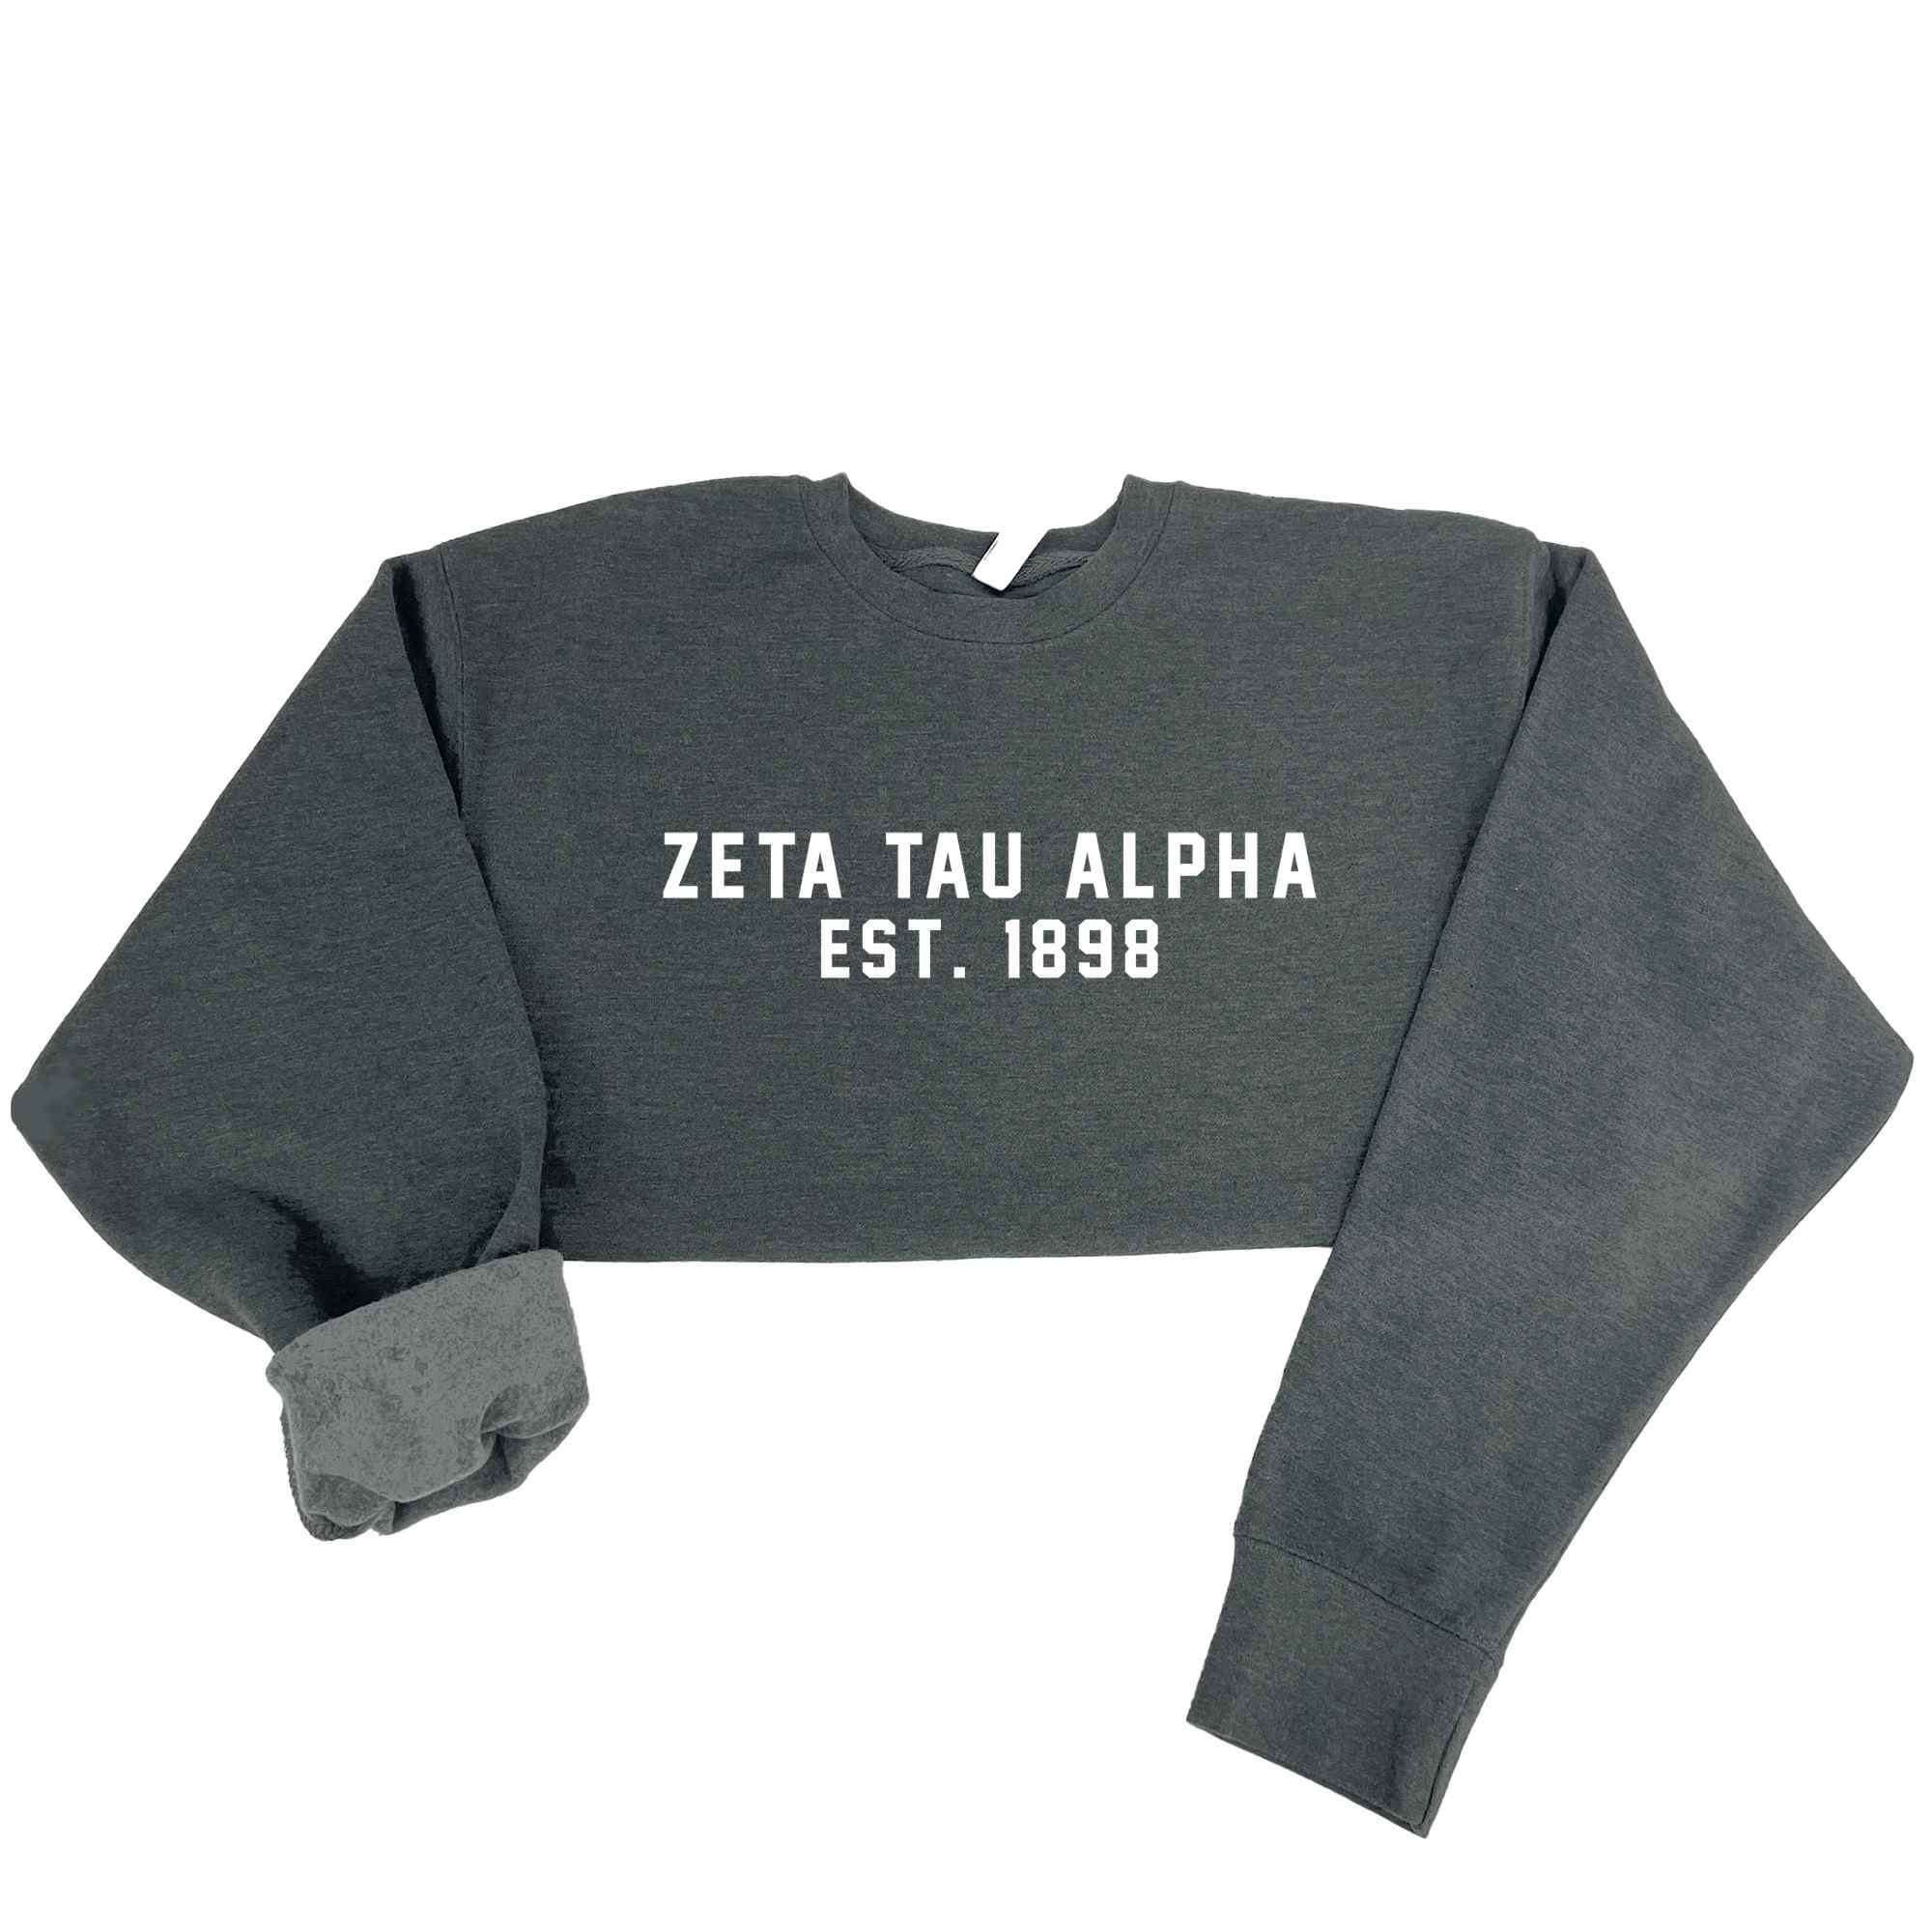 Zeta Tau Alpha Est. 1898 Sweatshirt